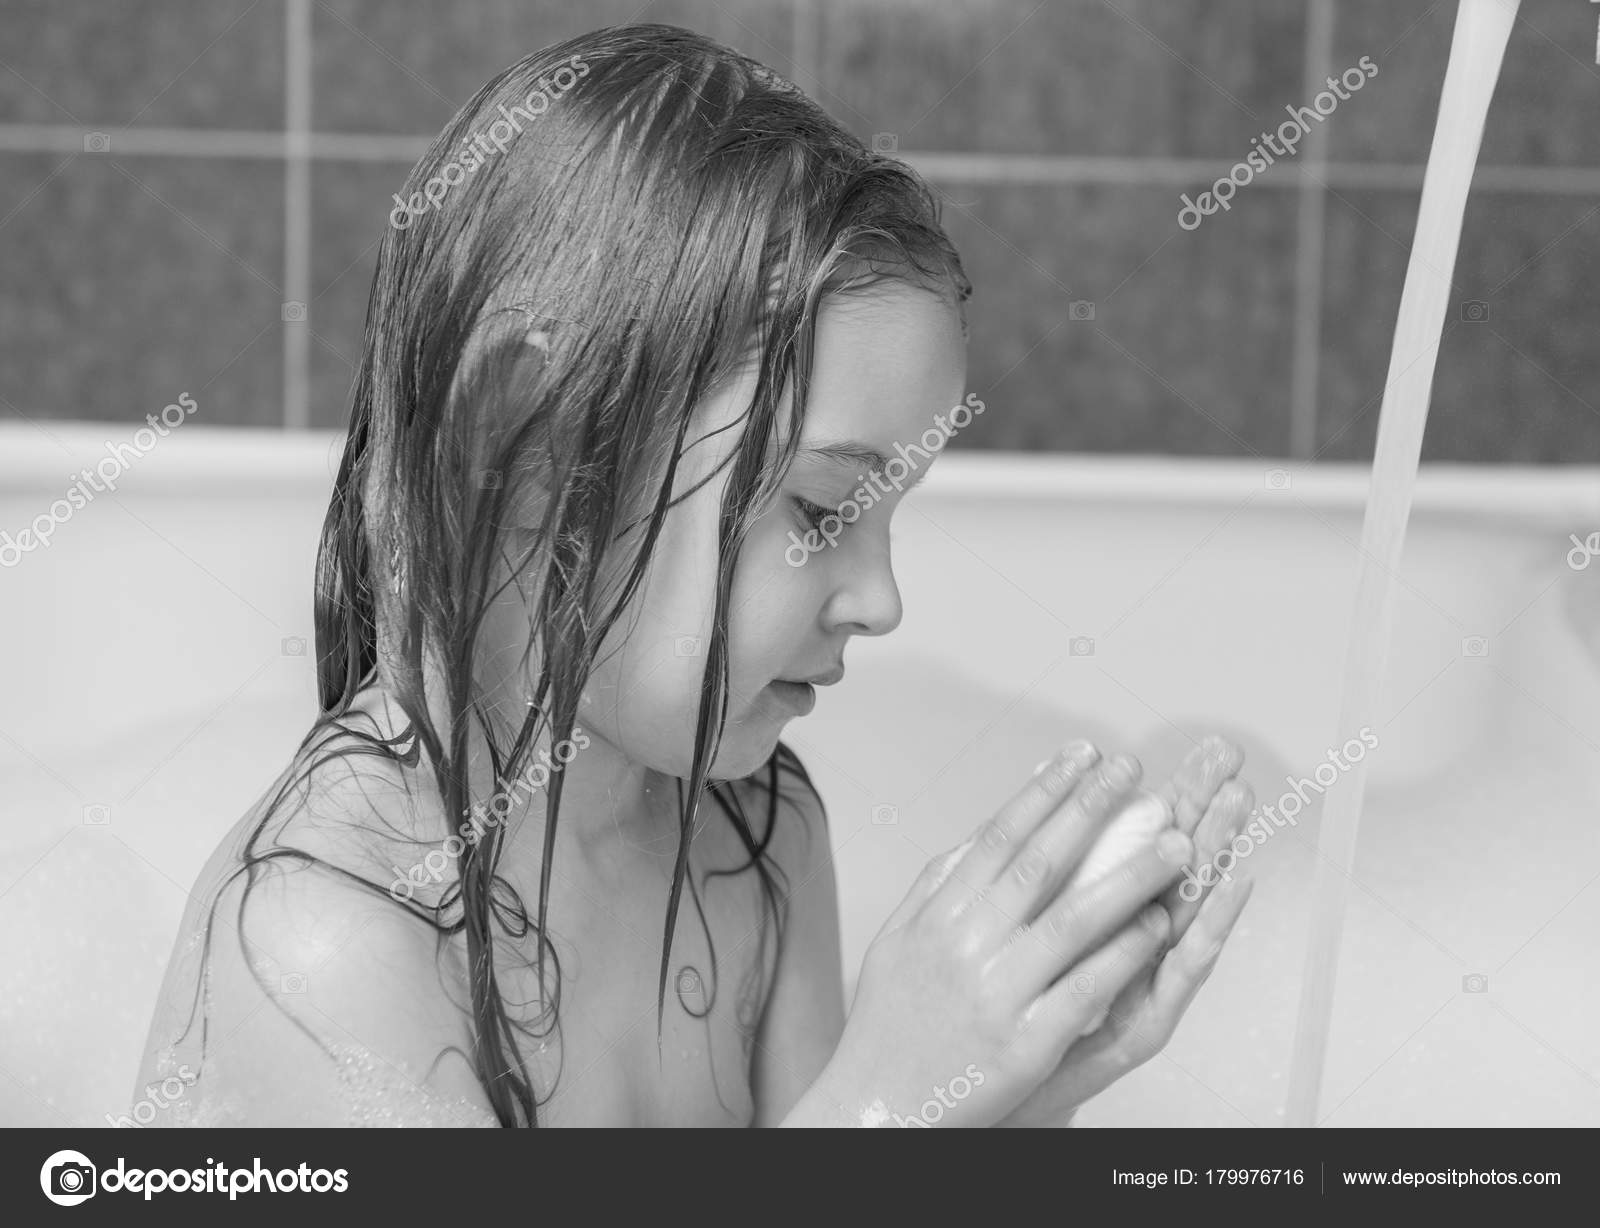 Одинокая скучающая девушка дрочит клитор в ванной